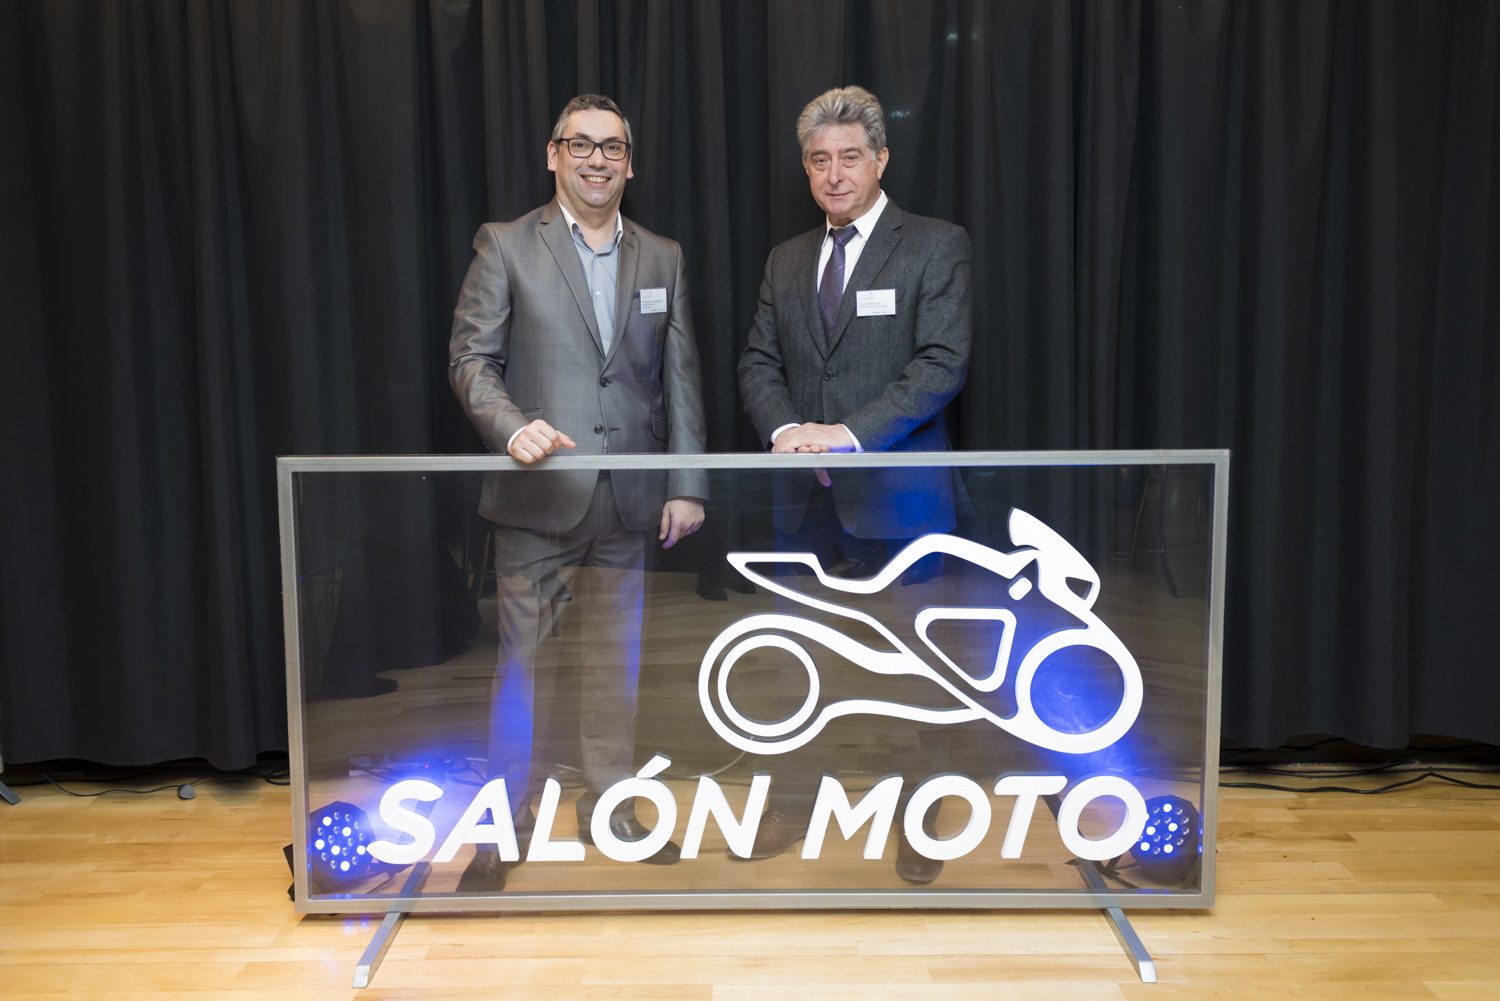 Salón Moto was officially presented